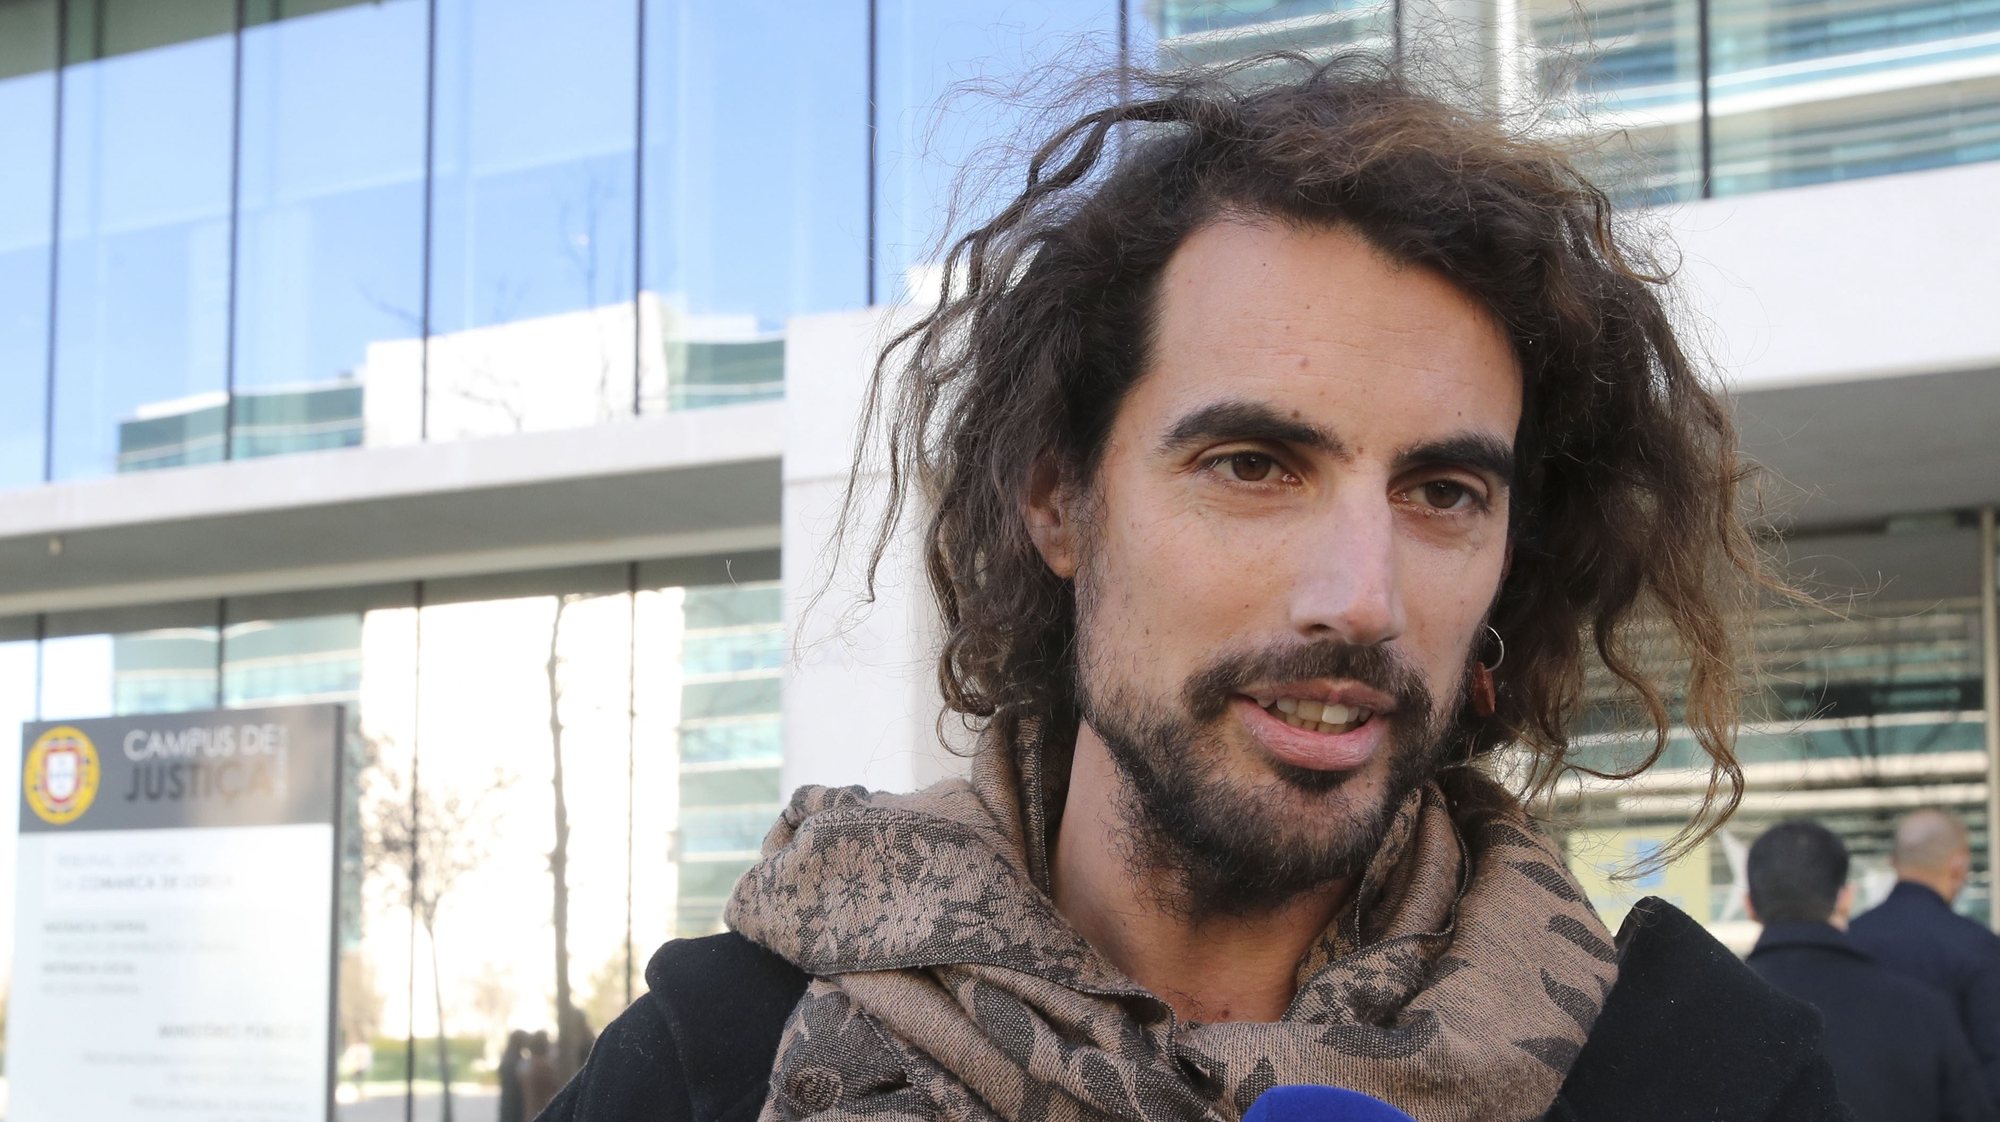 Ativista que em 2019 interrompeu primeiro-ministro condenado a pagar 300 euros, vai recorrer